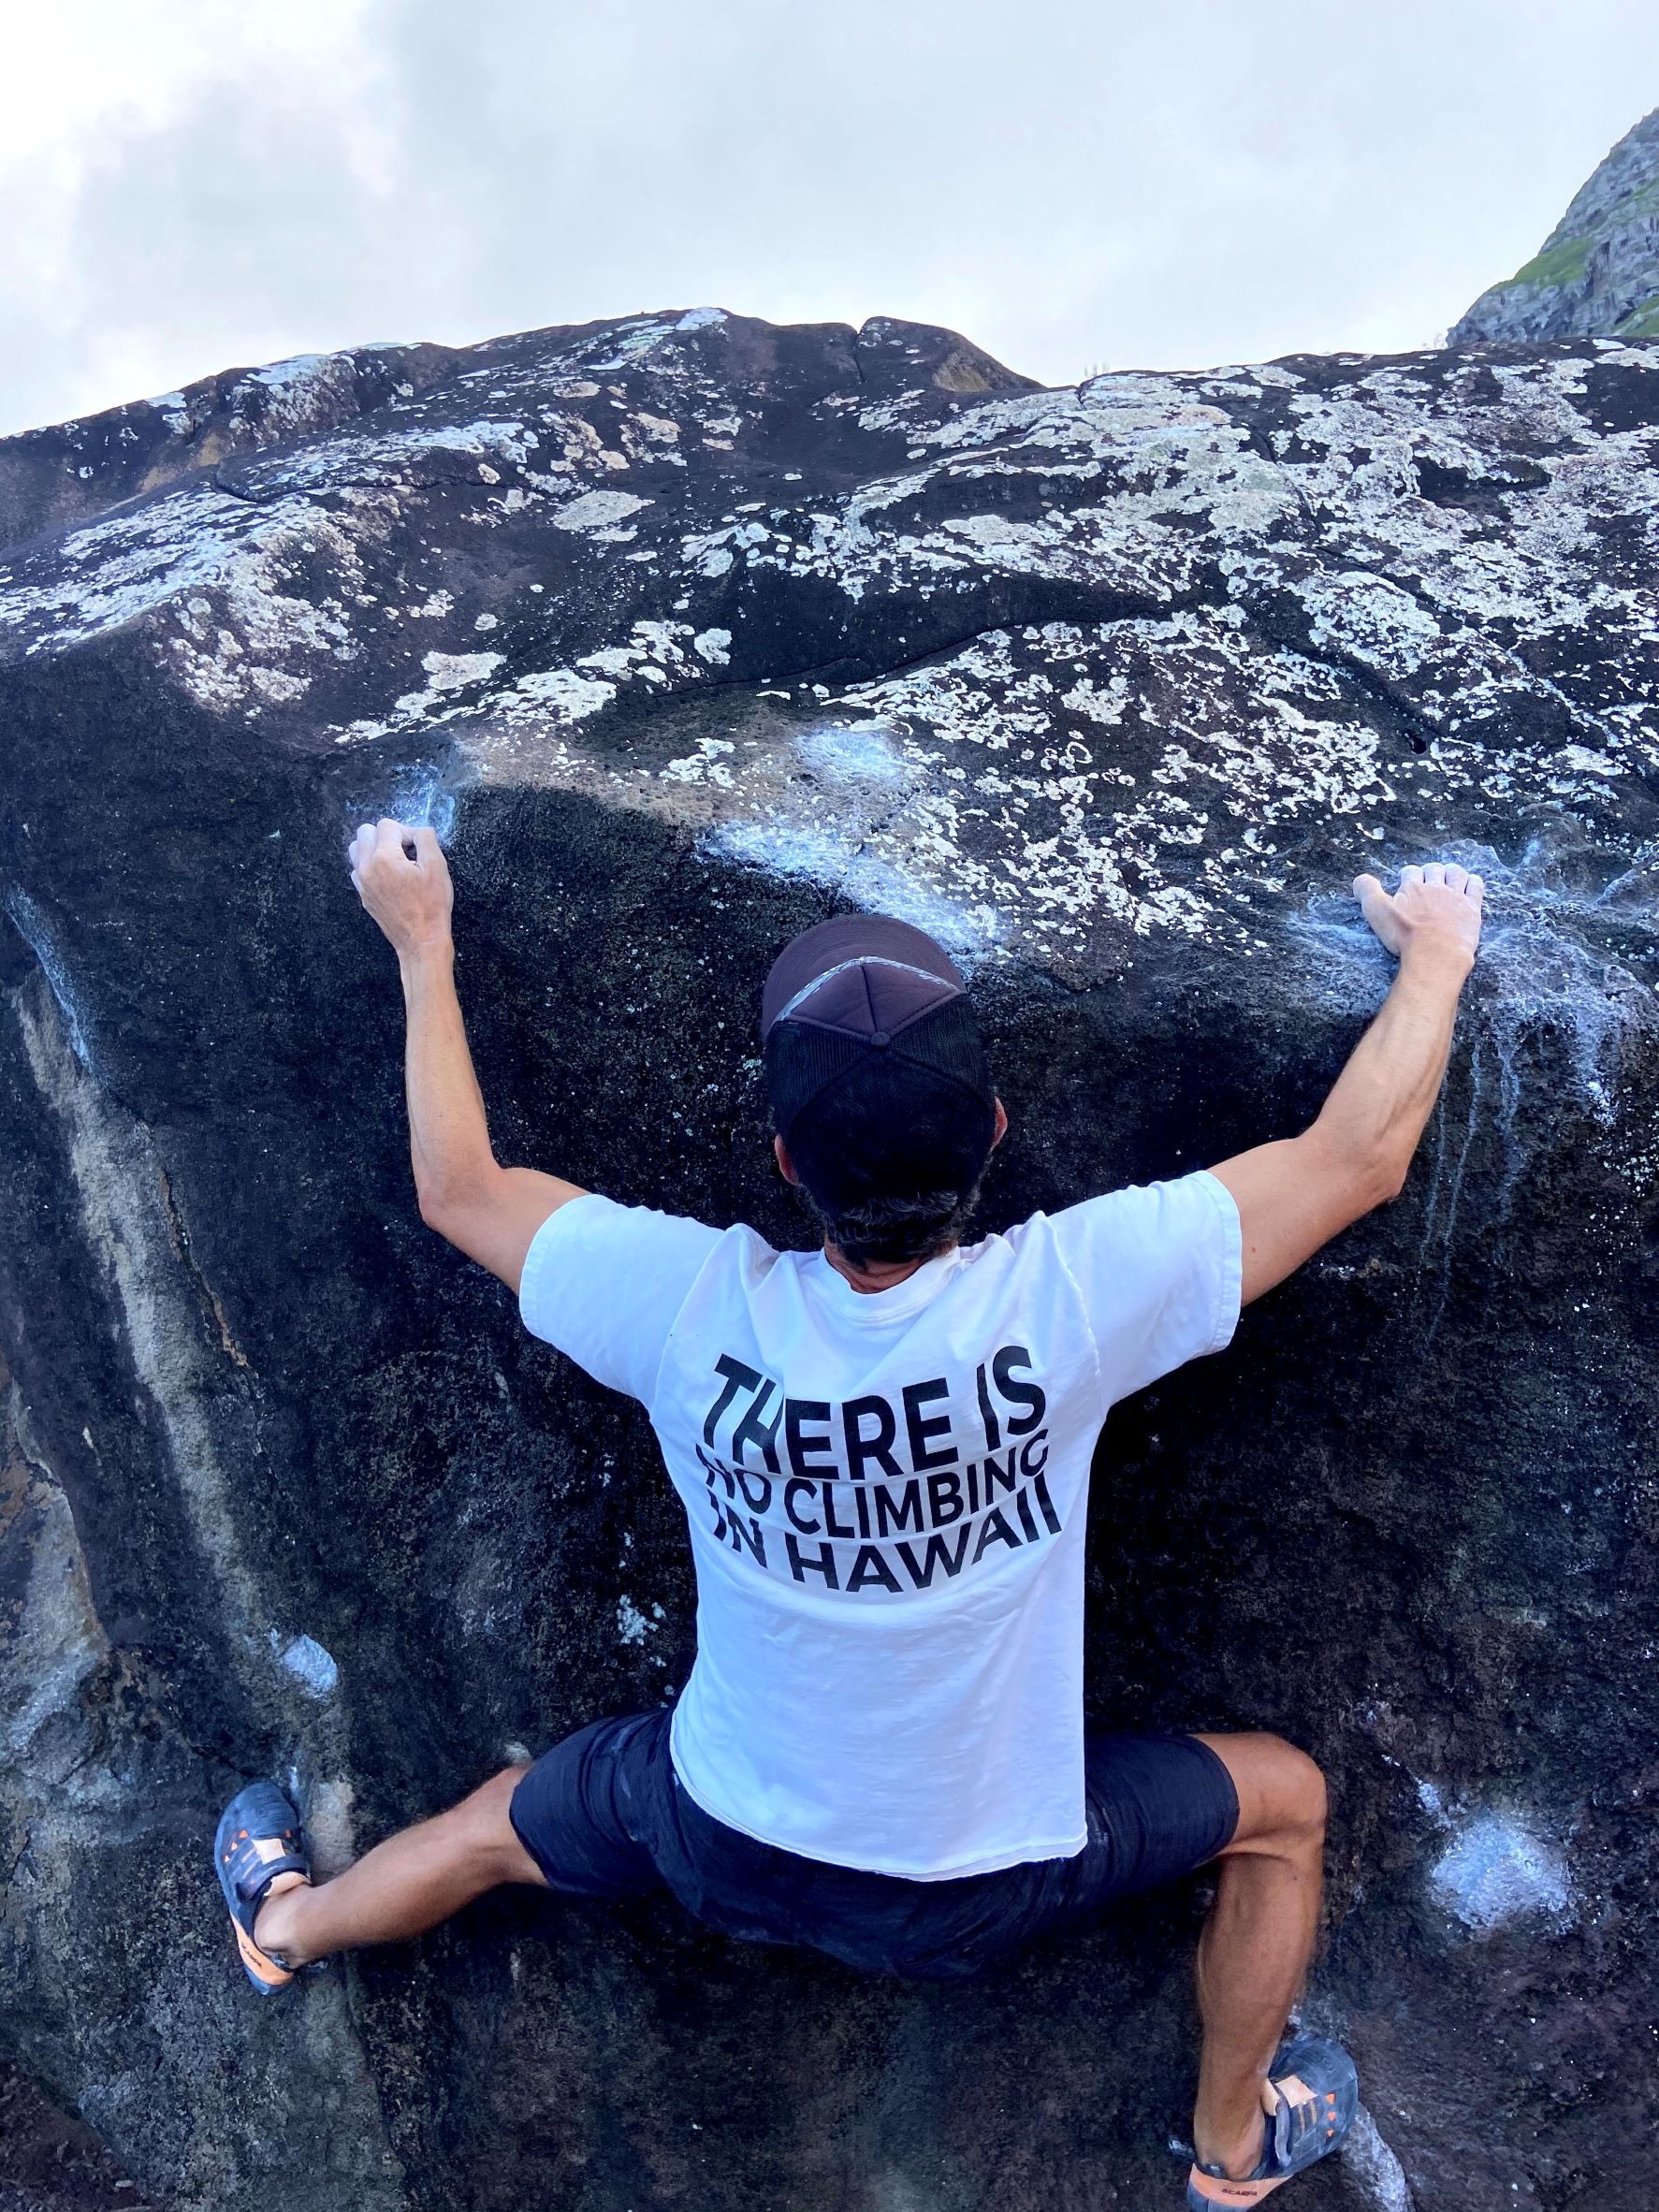 Primo piano di una persona che fa bouldering con una maglietta "There is no Climbing in Hawaii